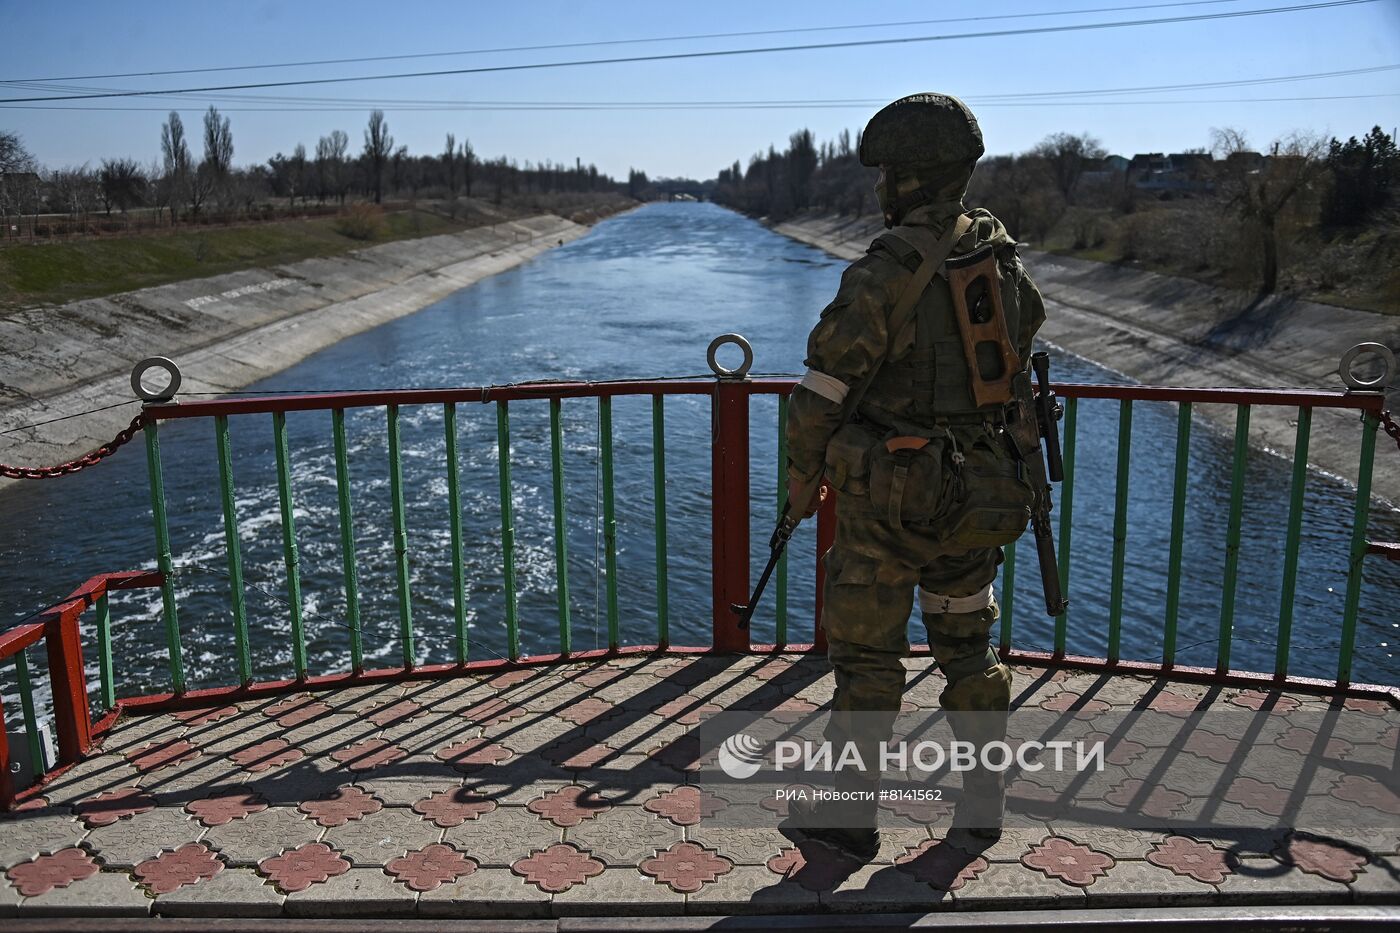  Северо-Крымский канал, разблокированный российскими военными на территории Украины